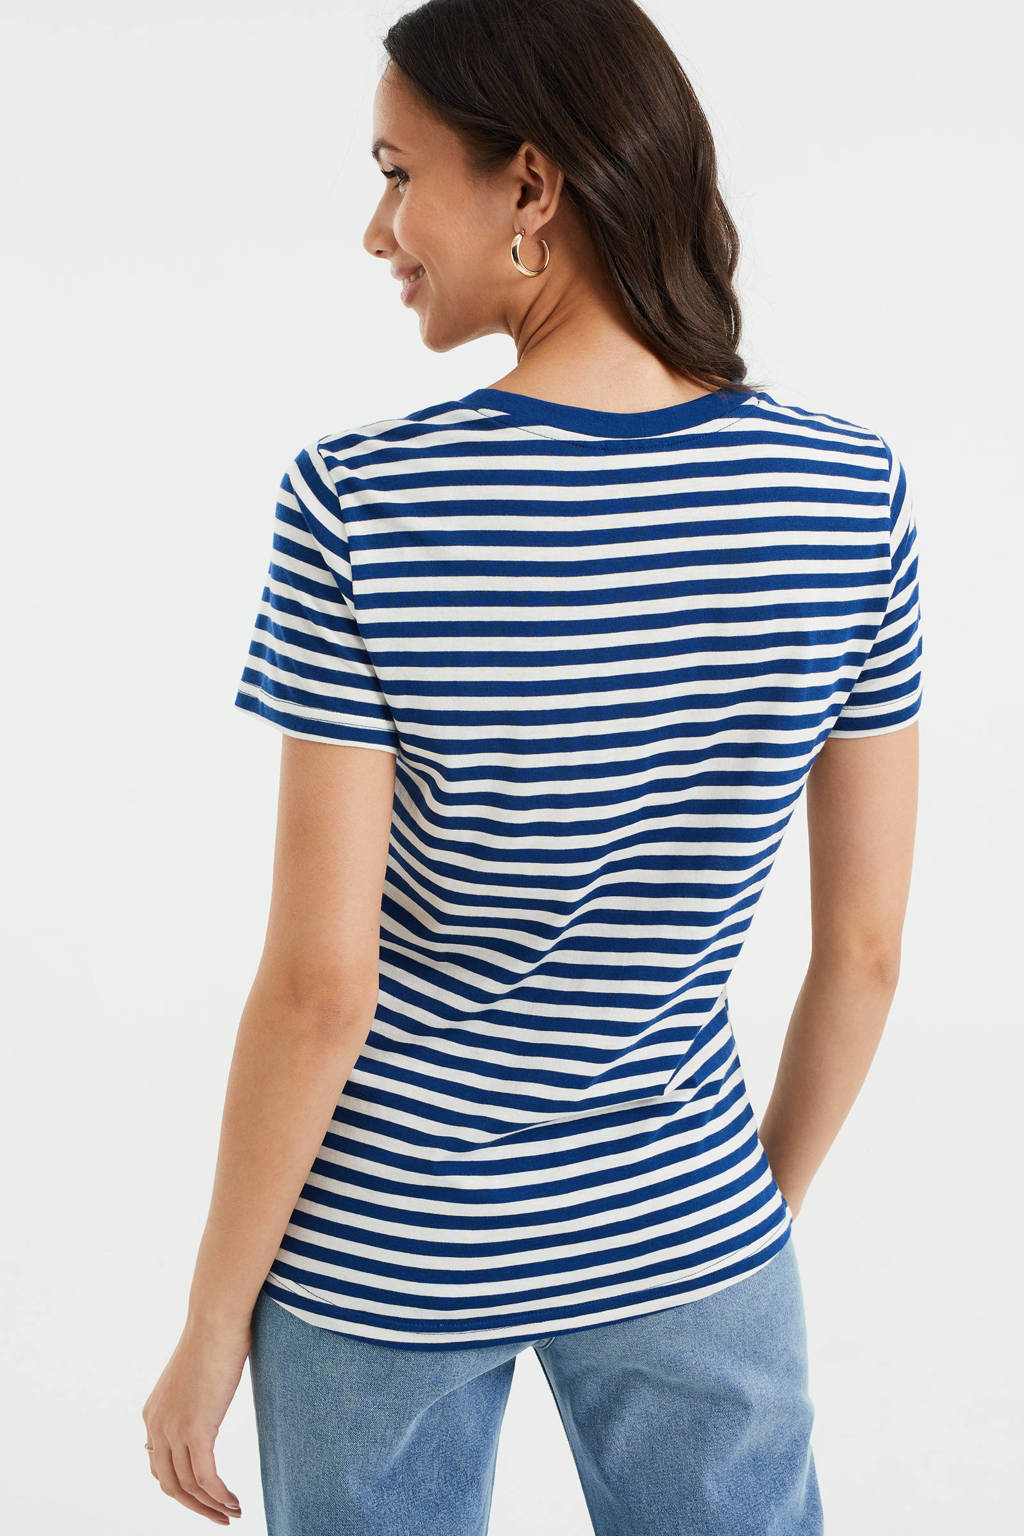 Hervat heilige heerlijkheid WE Fashion gestreept T-shirt blauw/wit | wehkamp